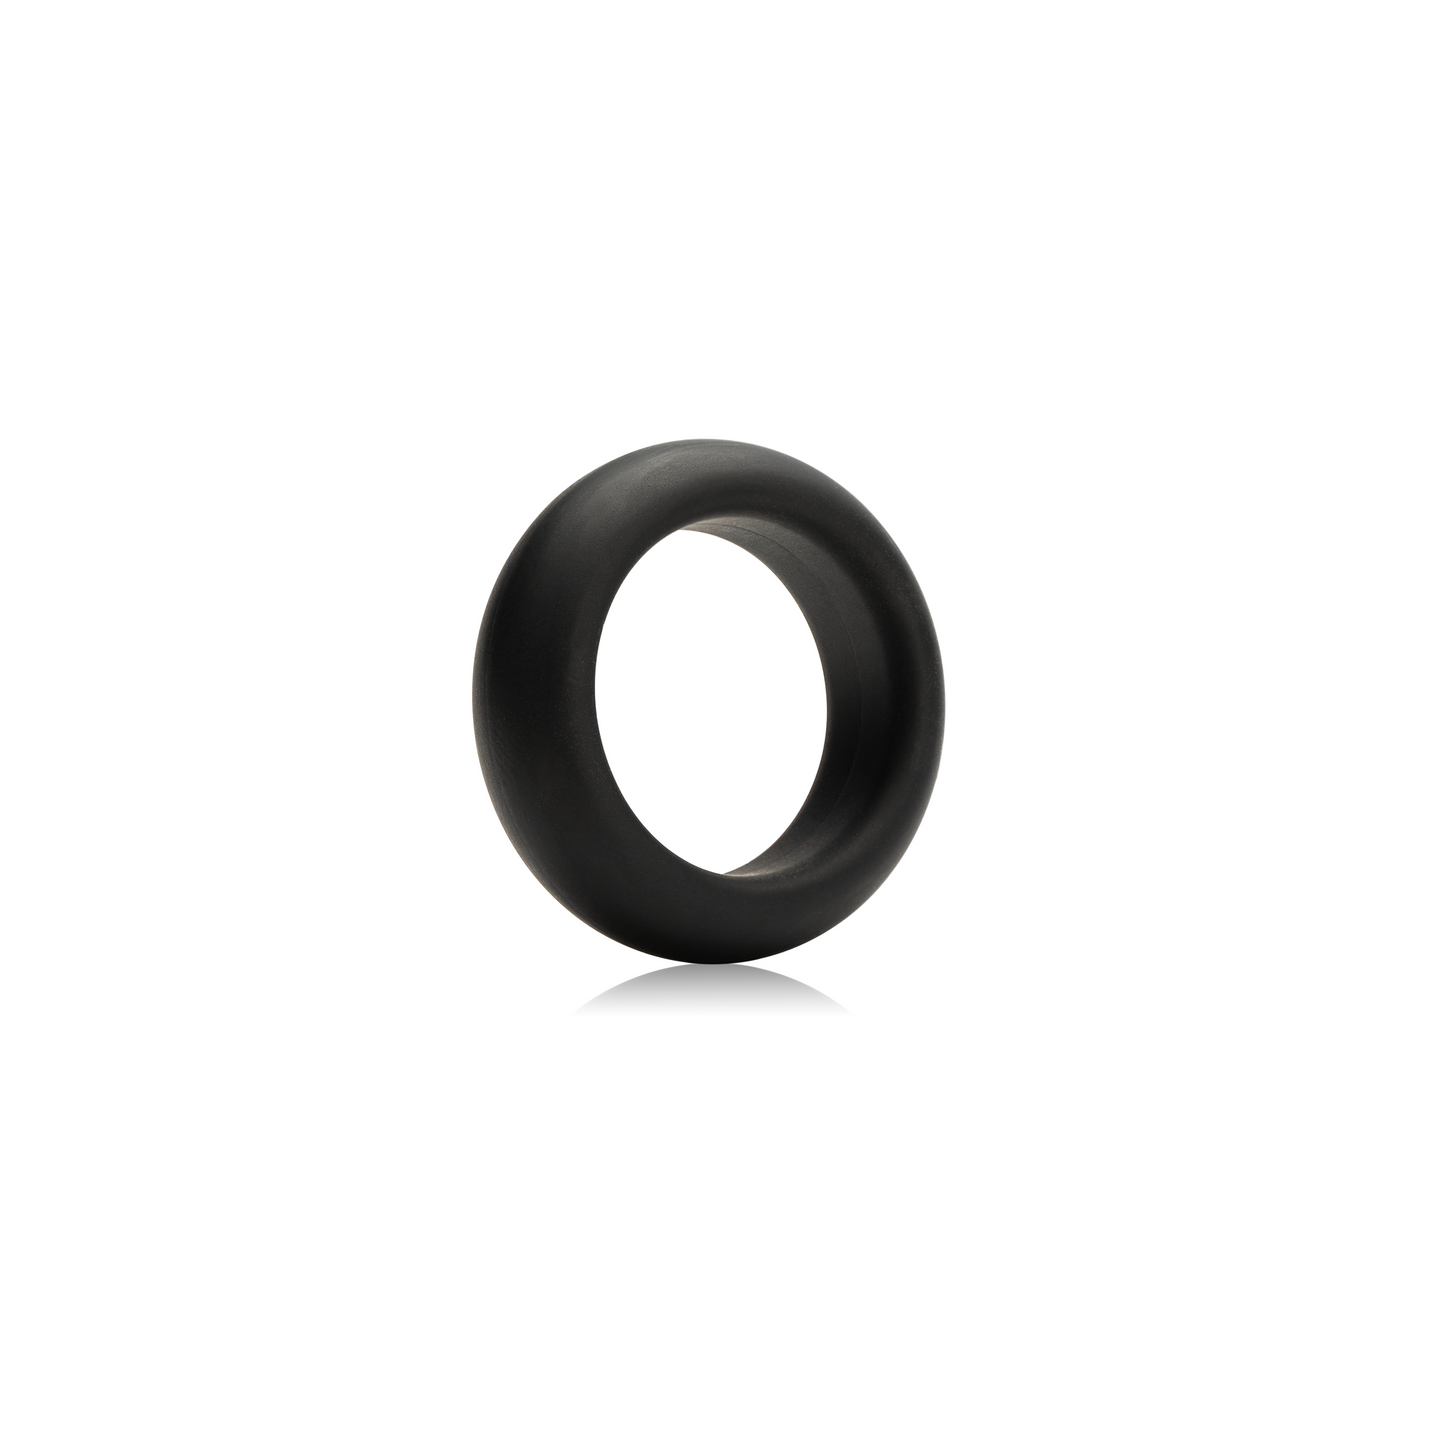 Maximum Stretch Silicone Cock Ring - Black